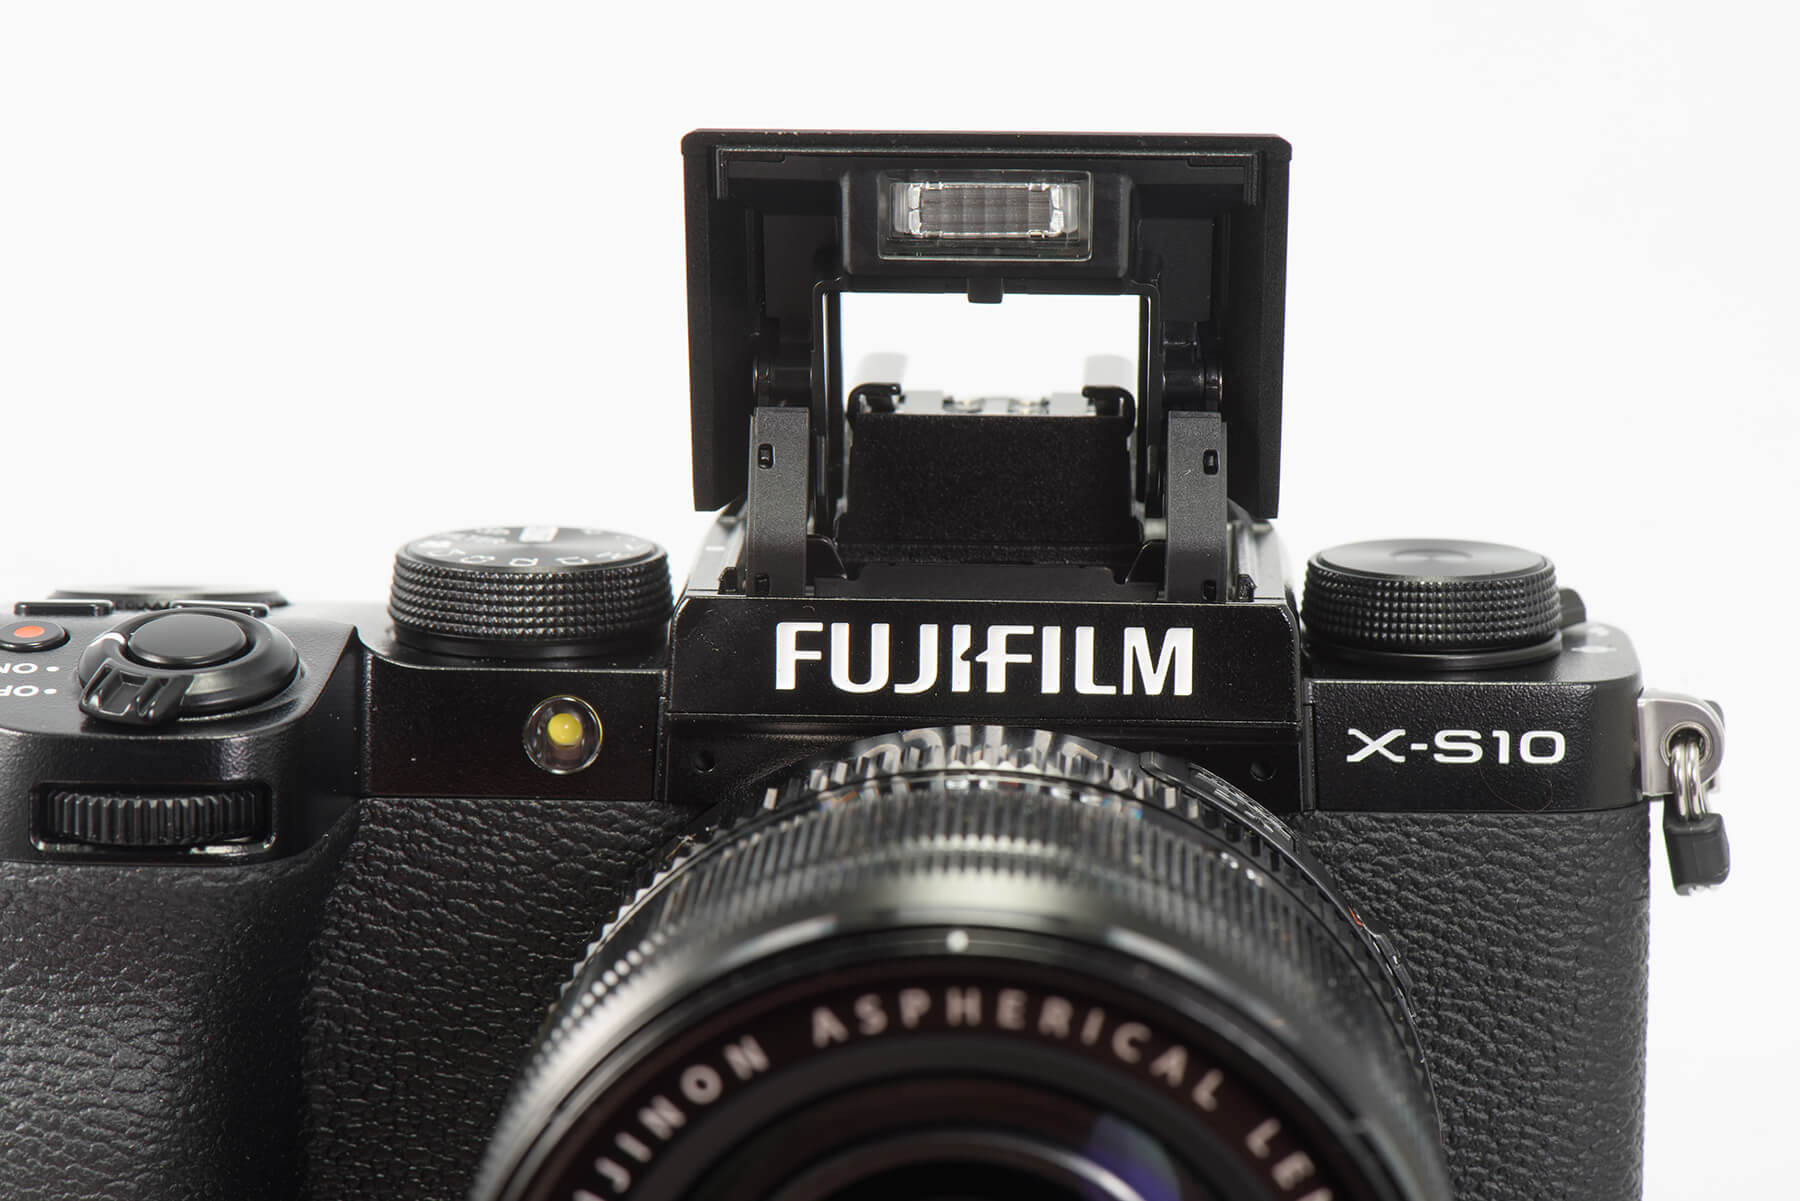 Fujifilm X-S10 flash